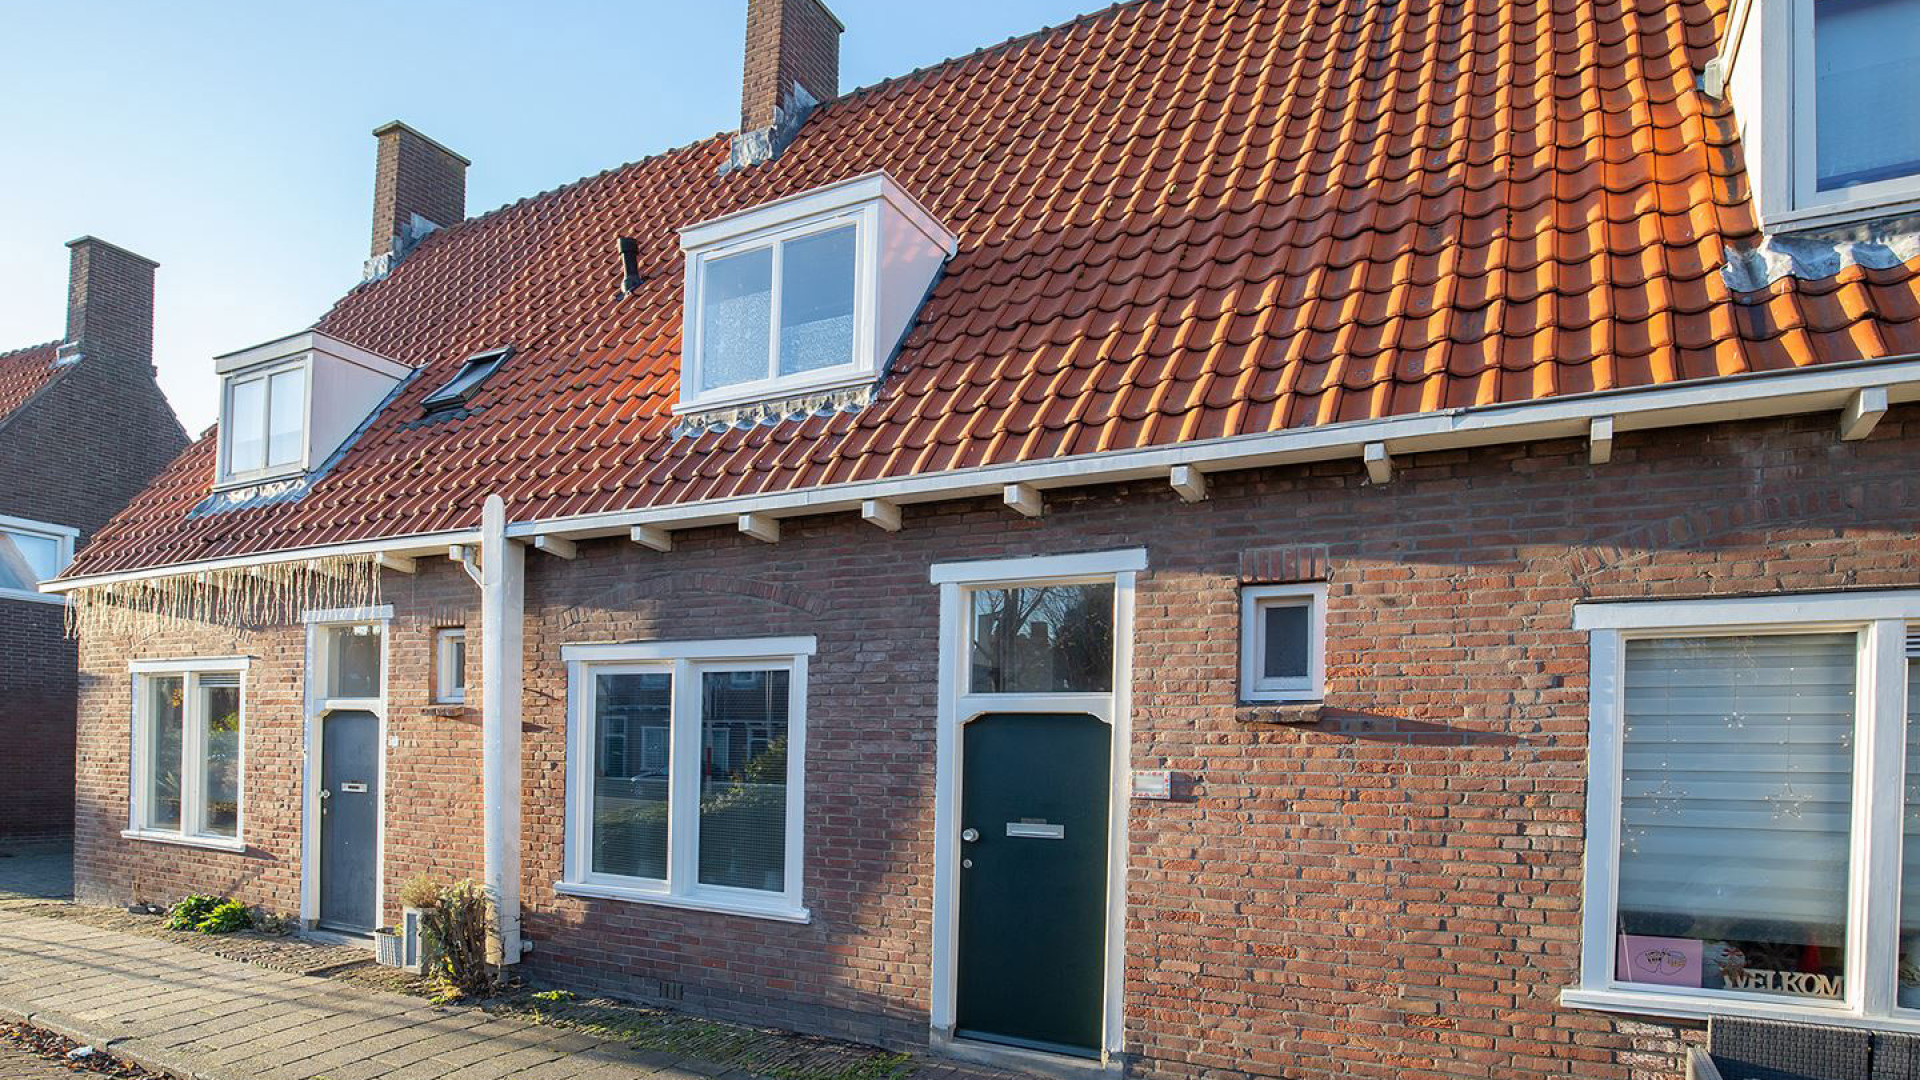 Danny Vera koopt deze woning in Middelburg. Zie foto's